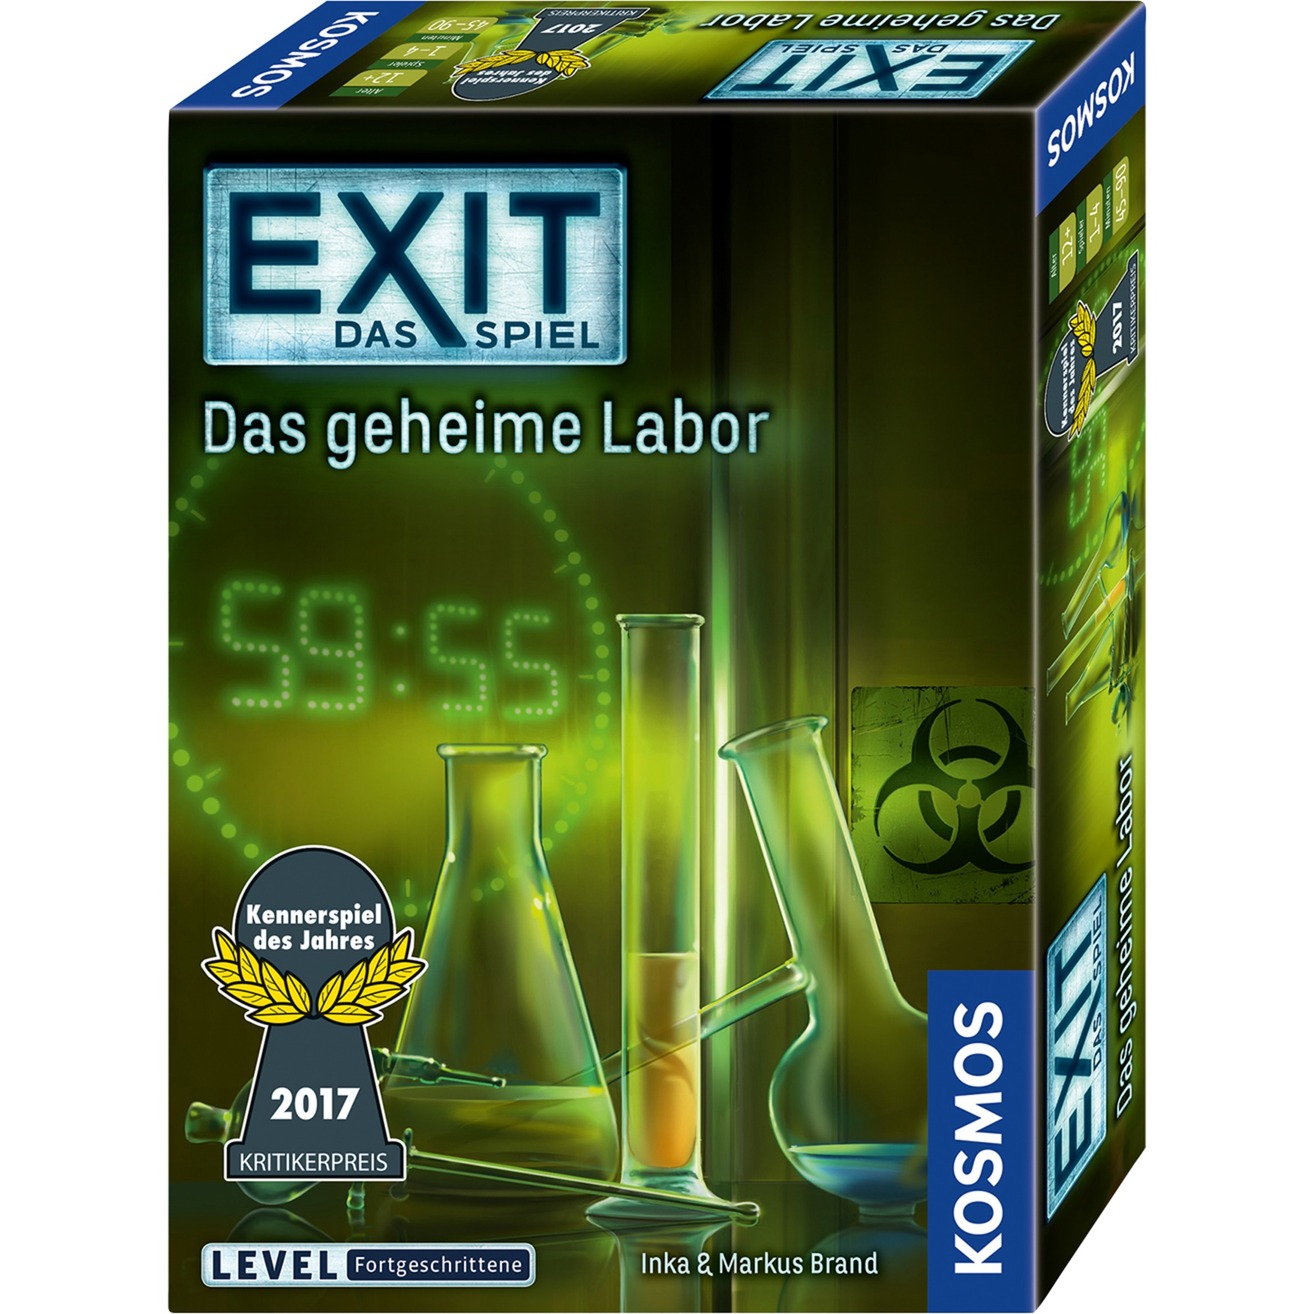 Image of Alternate - EXIT - Das Spiel - Das geheime Labor, Partyspiel online einkaufen bei Alternate